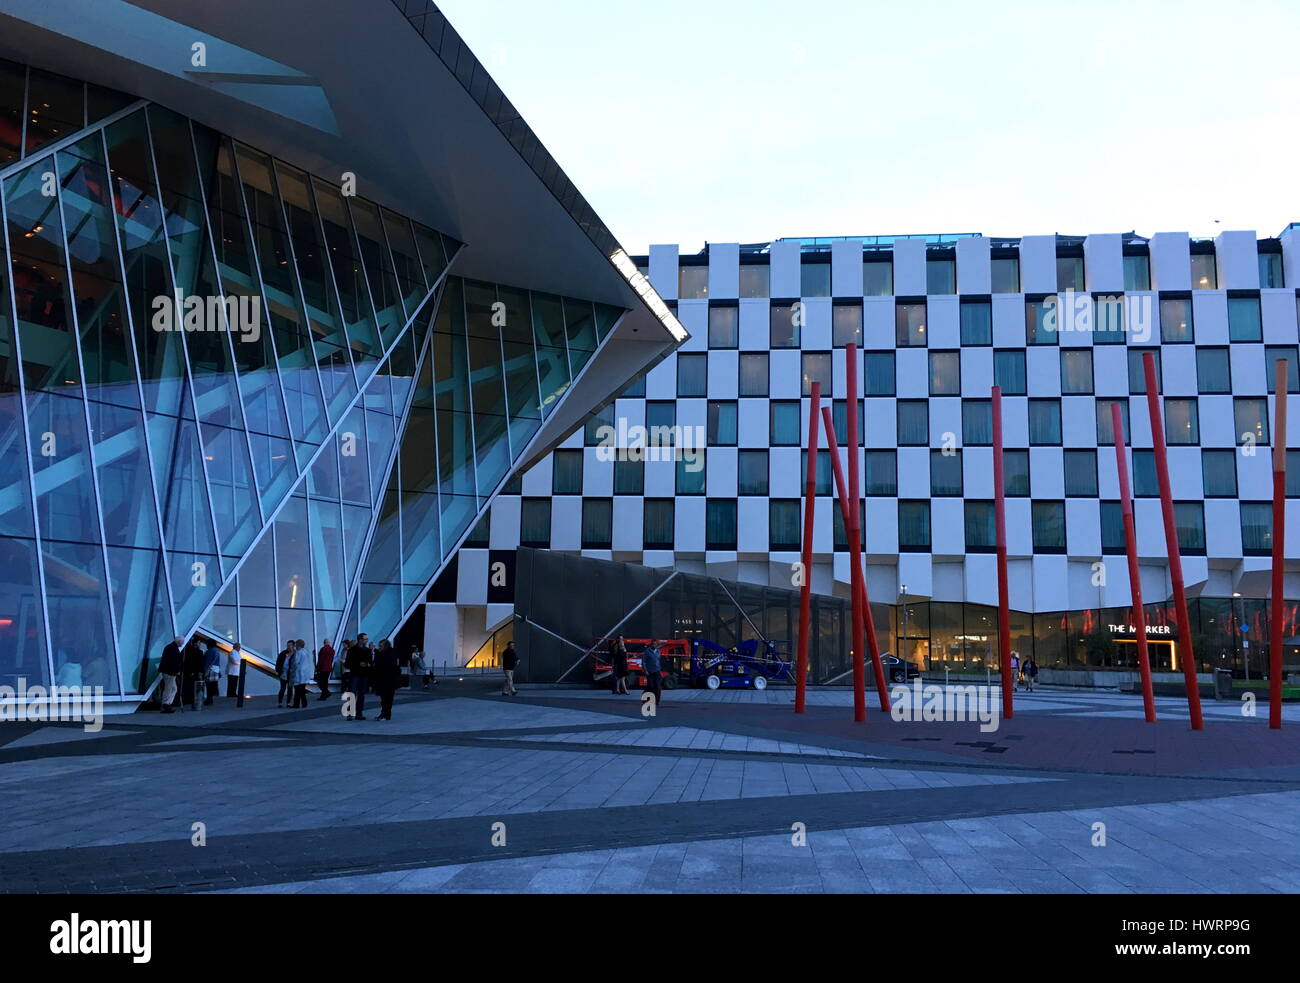 Facciata del Bord Gais theatre a Dublino, in Irlanda la sera con architettura moderna edificio accanto ad esso Foto Stock